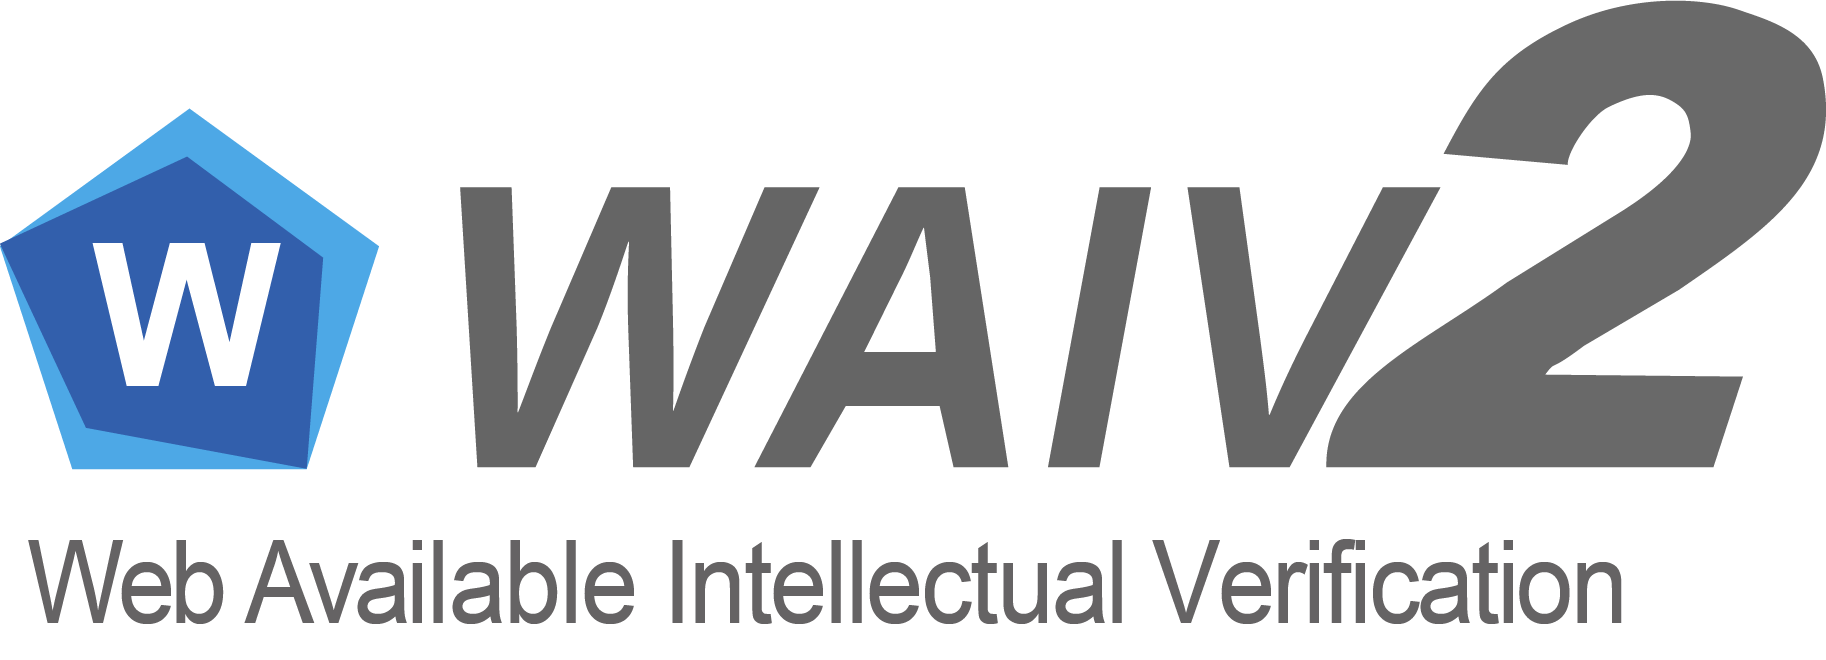 ウェブアクセシビリティ評価ツール「WAIV2」